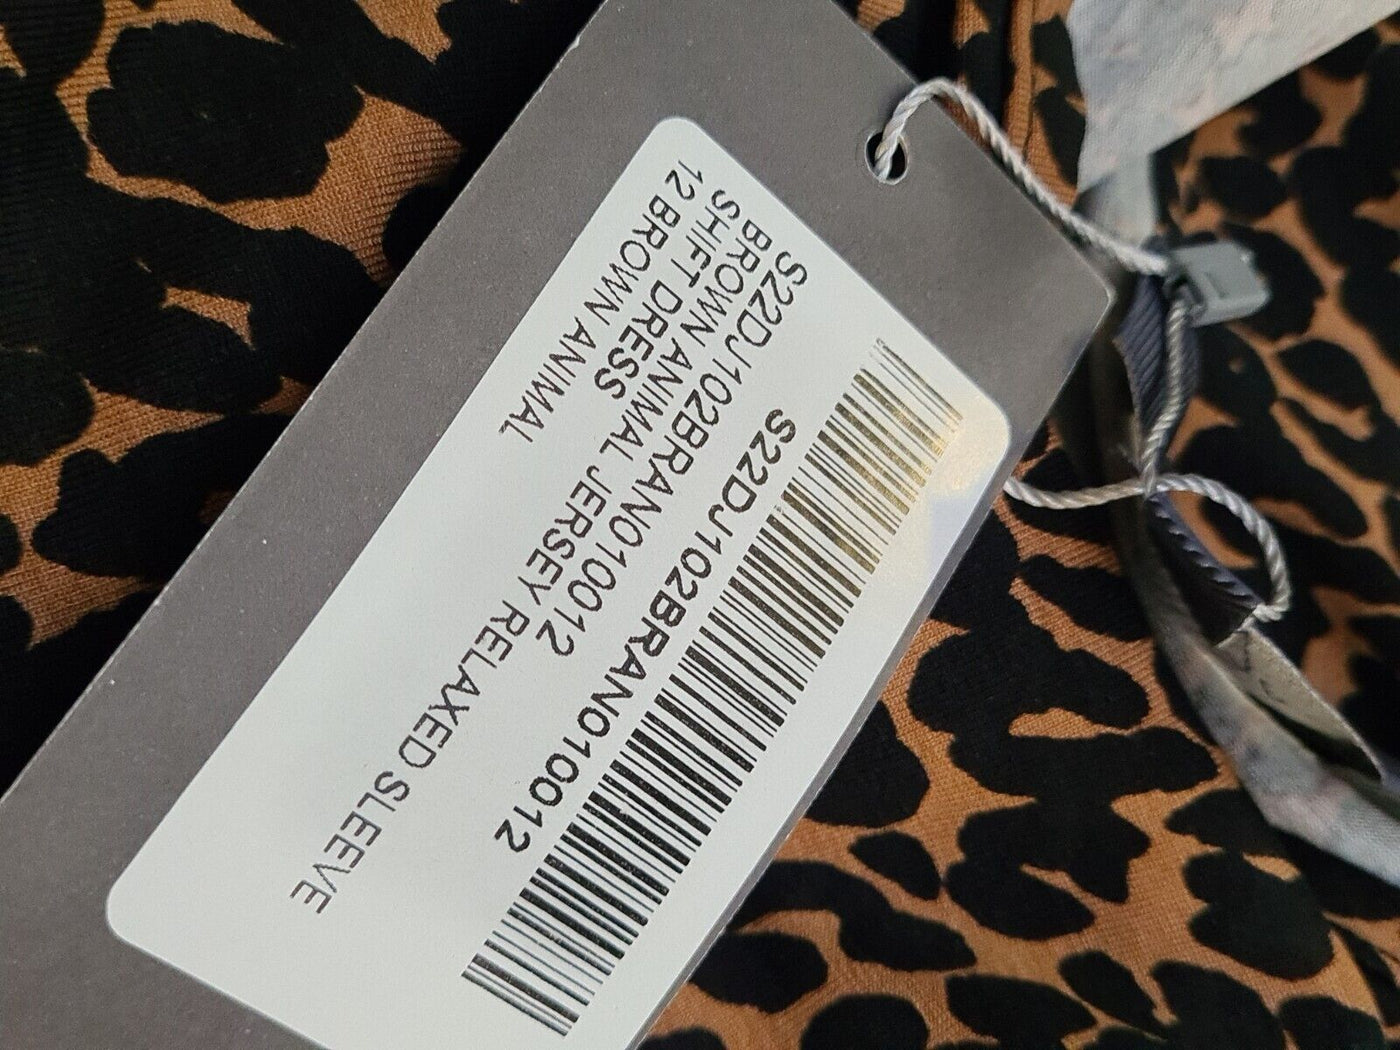 Sosandar Brown Animal Print Relaxed Sleeved Shift Dress Size UK 12 **** V512